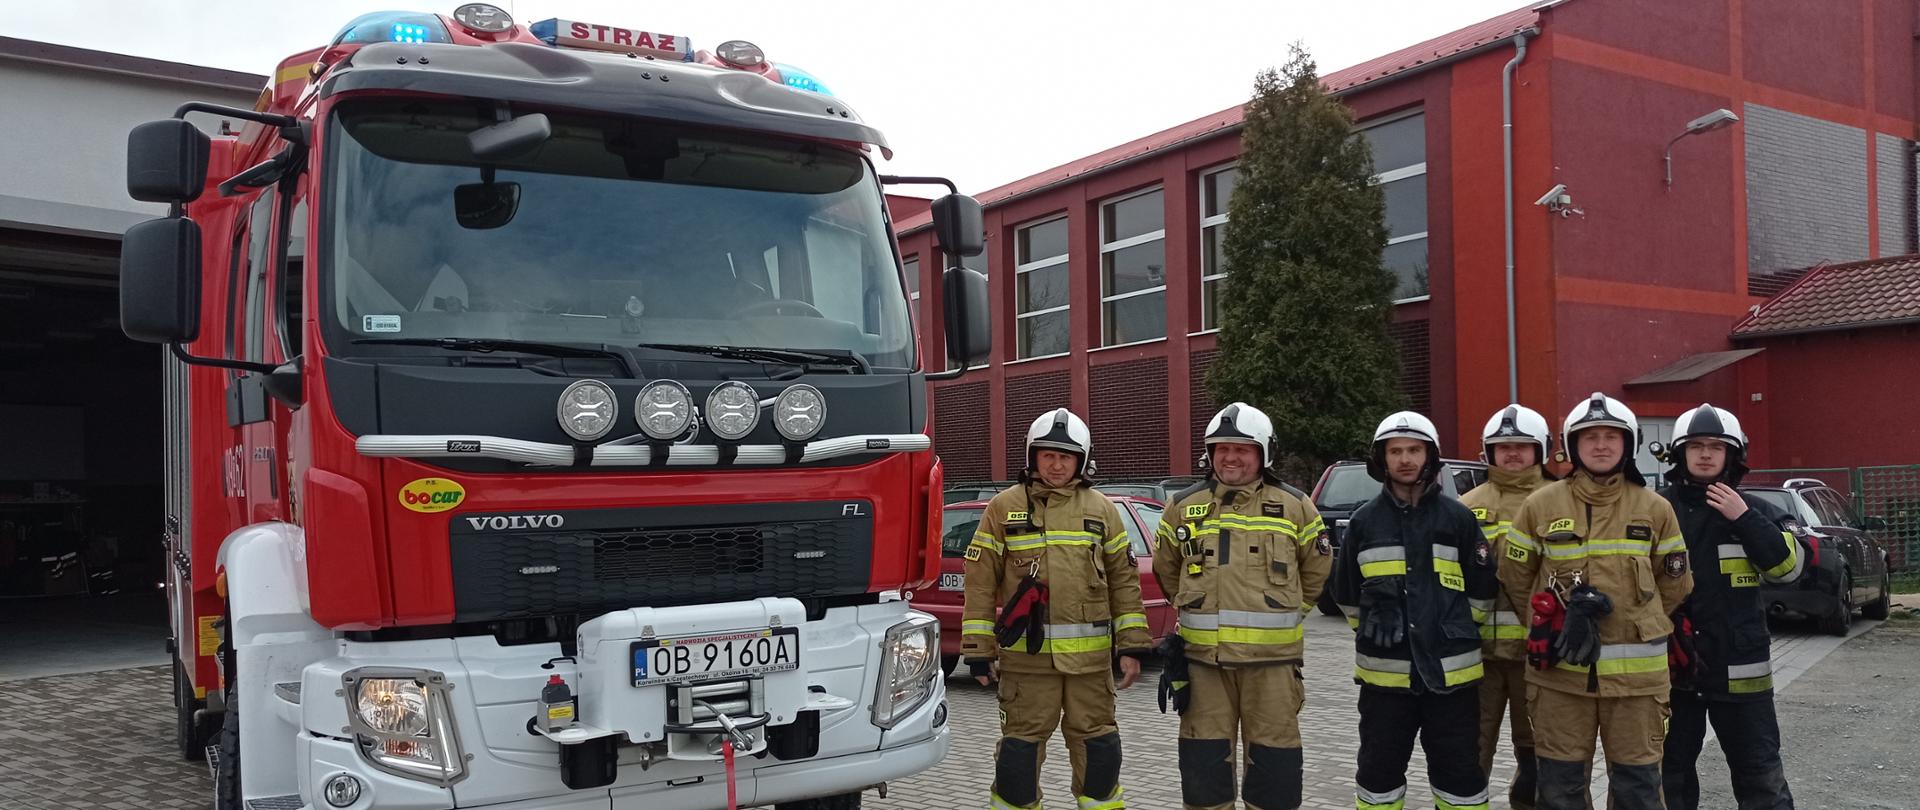 Inspekcje gotowości operacyjnej jednostek ochrony przeciwpożarowej z terenu powiatu brzeskiego - zdjęcie przedstawia strażaków podczas inspekcji obok ustawiony jest samochód gaśniczy